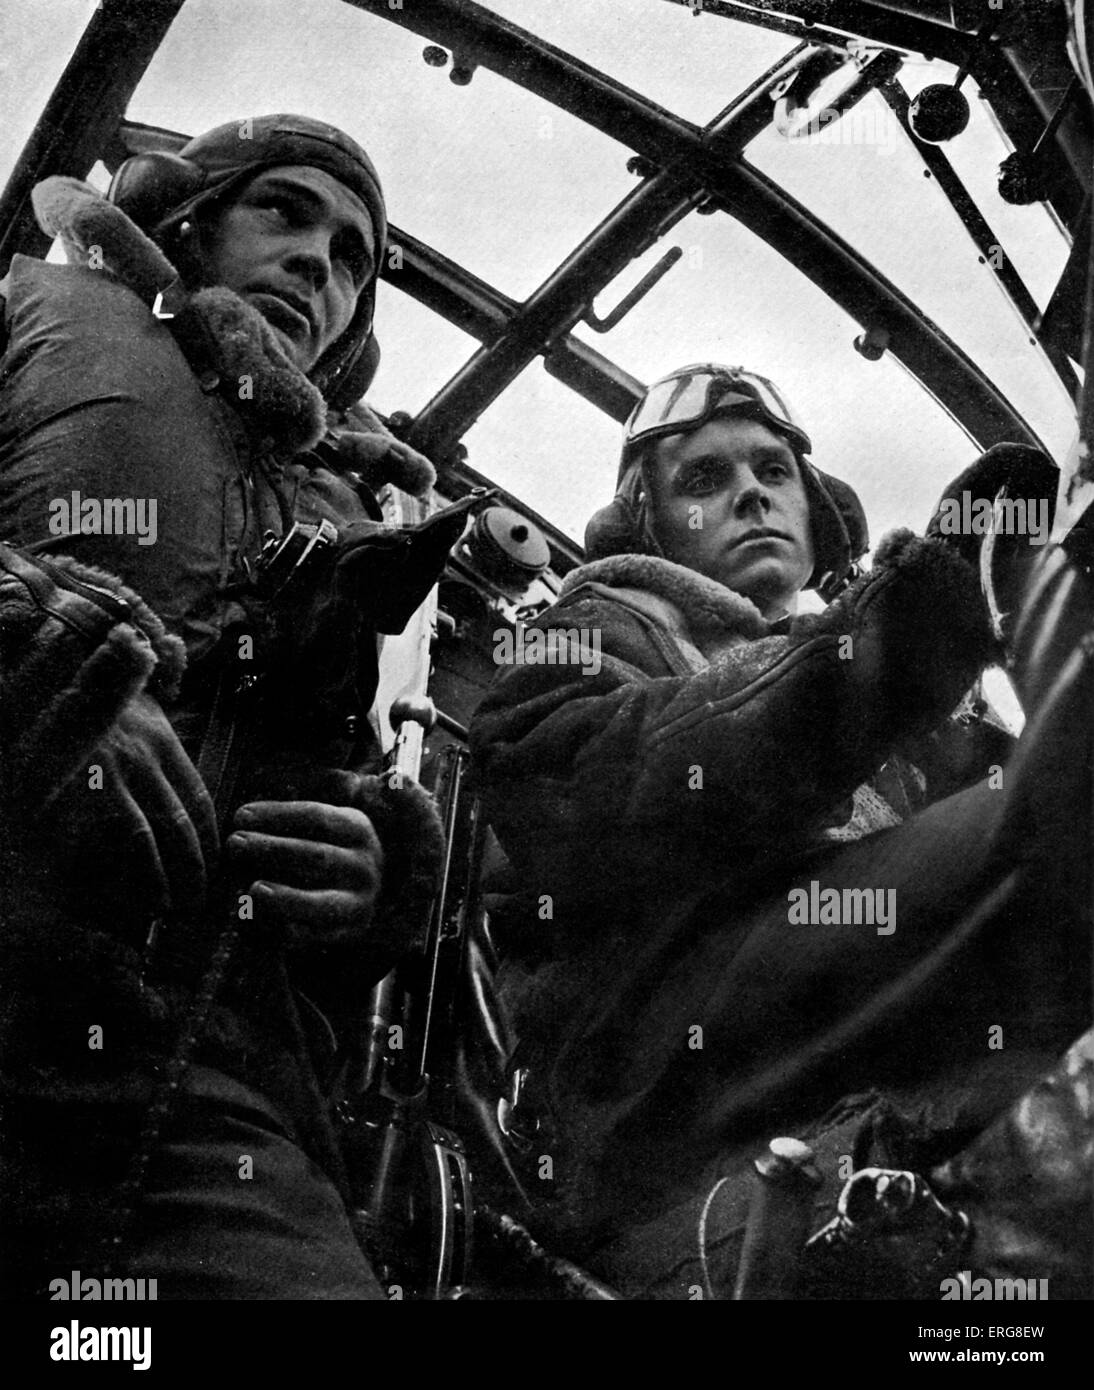 World War 2 - RAF pilote et second pilote du Bomber Command. Publié 1941 Banque D'Images